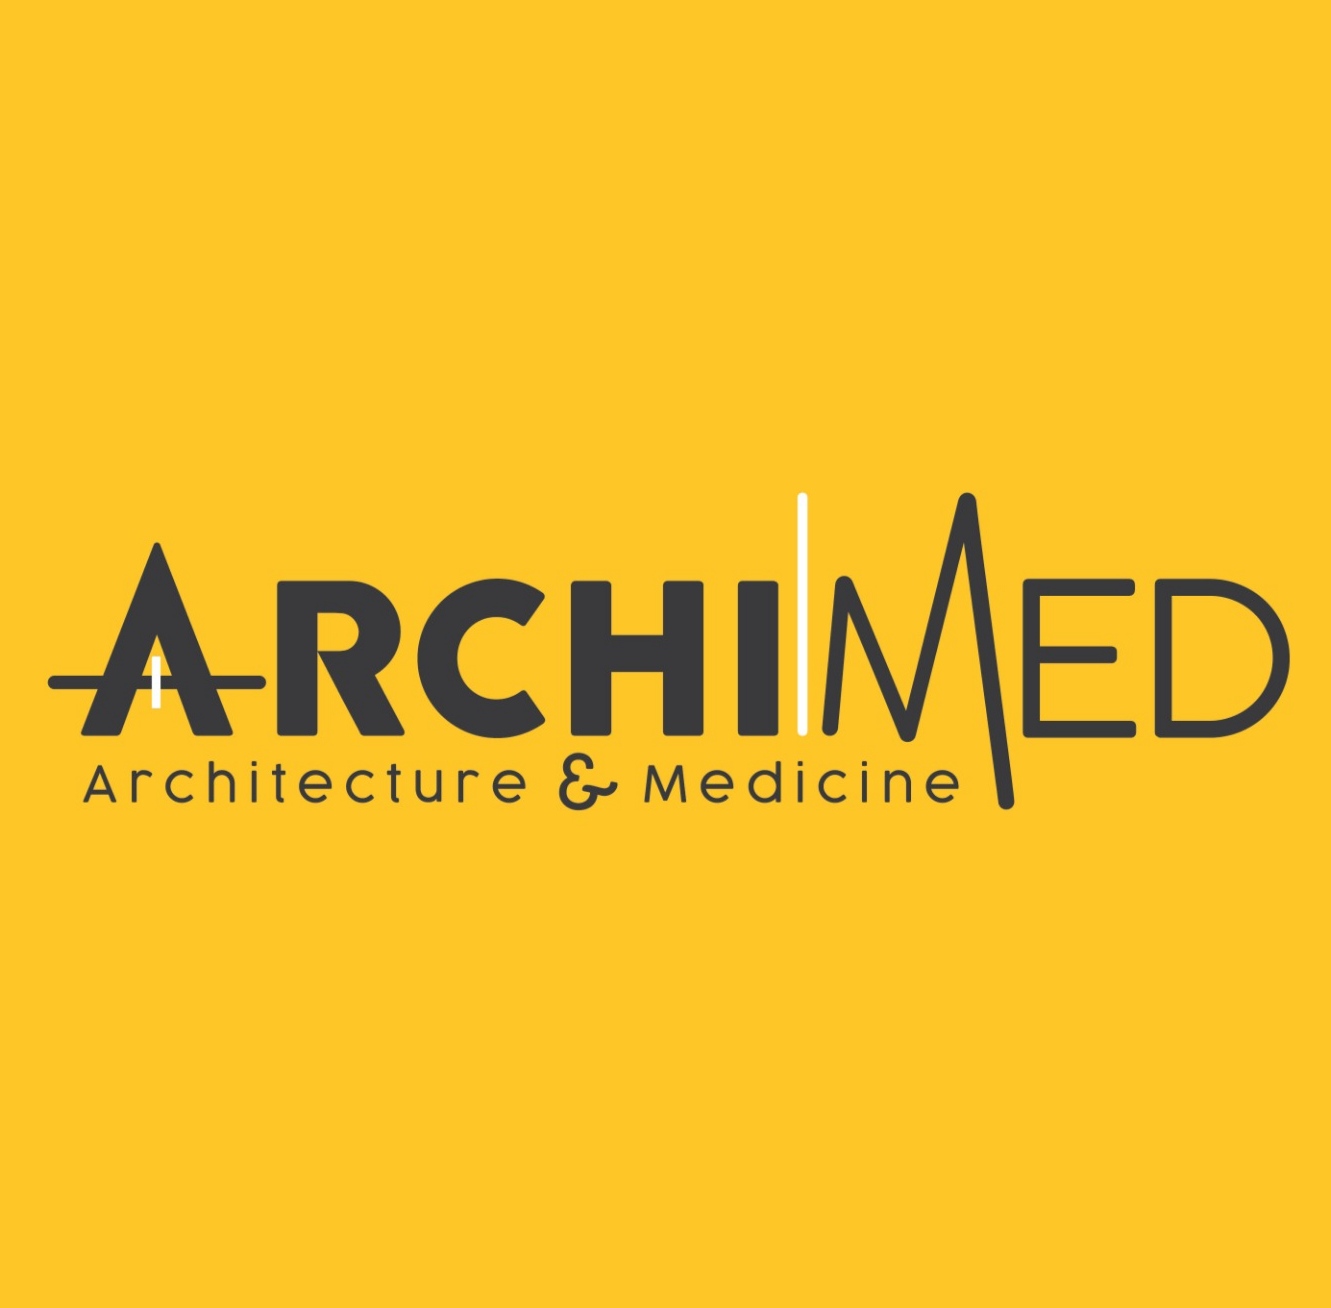 Archimed İç Mimarlık Ve Danışmanlık Hiz. Tic. Ltd. Şti.